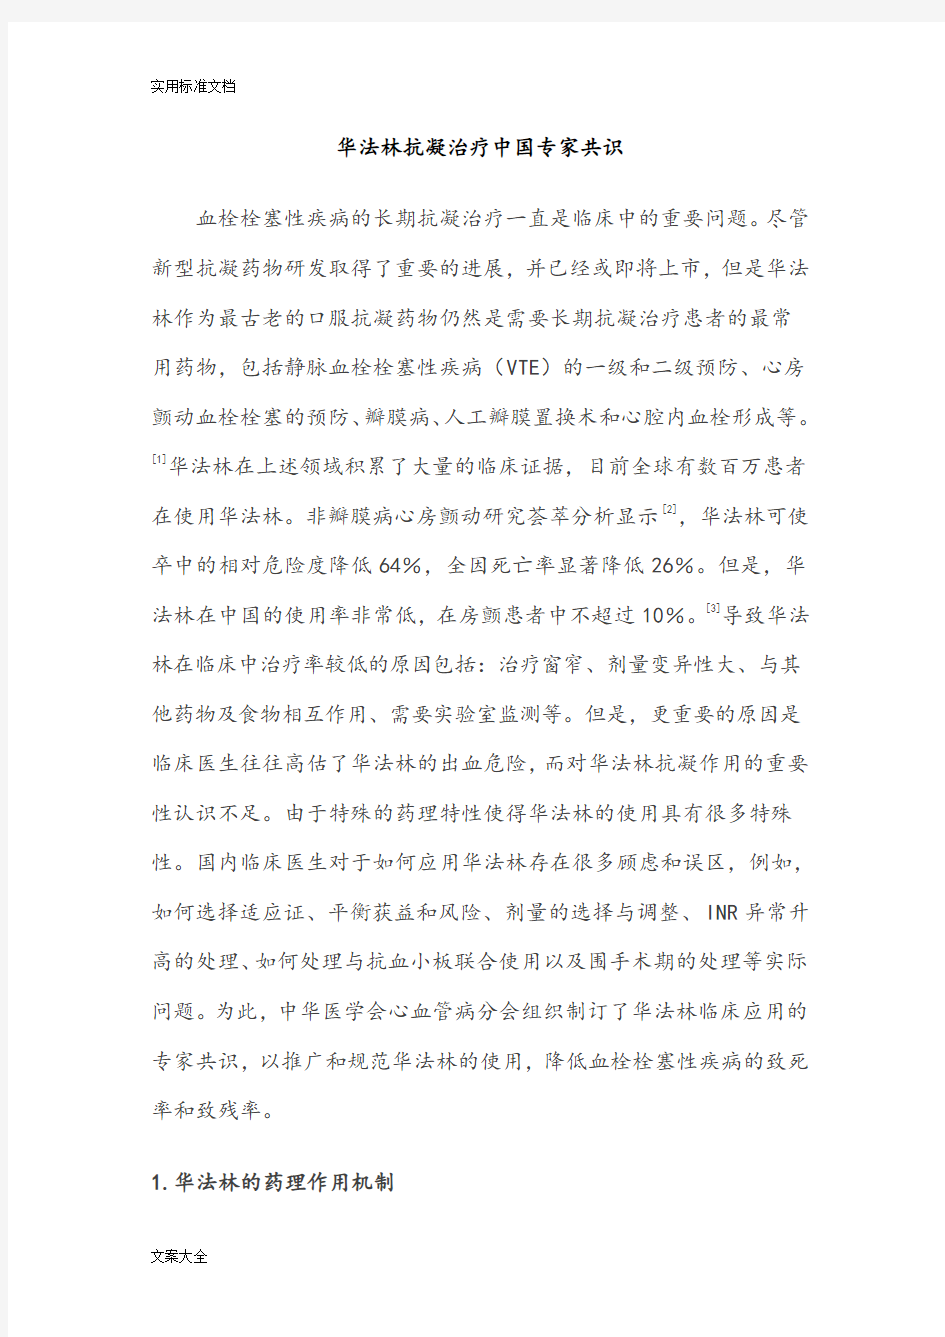 2013华法林抗凝治疗中国专家共识